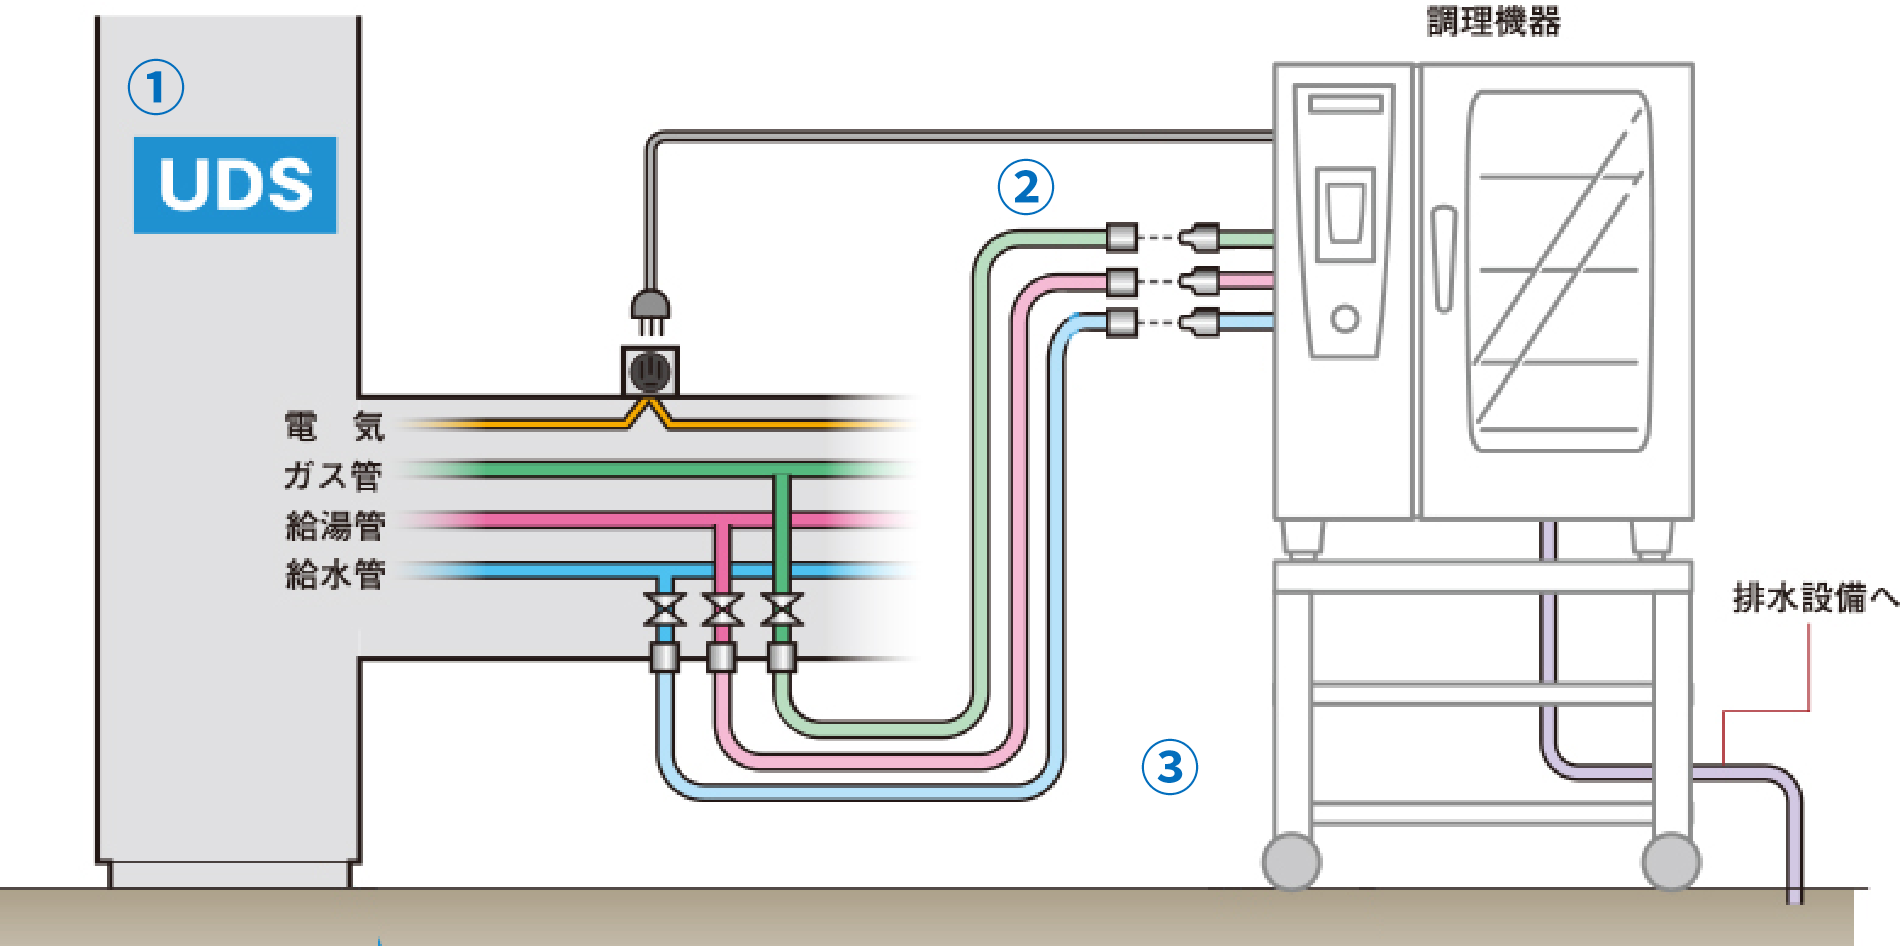 UDS / 電気・ガス管・給湯管・給水管 / 調理機器 /
                     排水設備へ